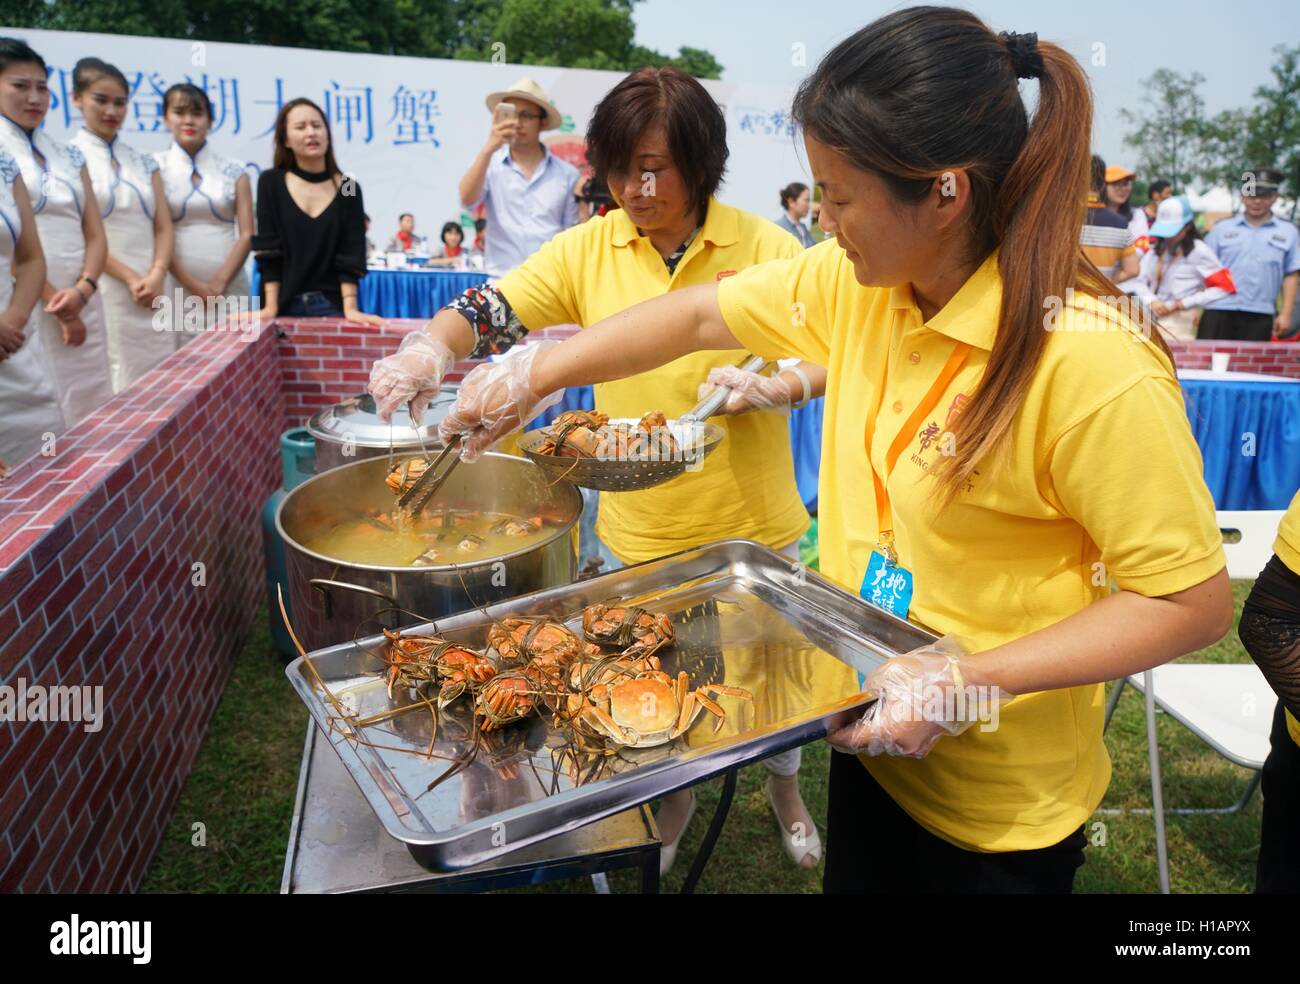 Suzhou, Province de Jiangsu en Chine. 29Th Sep 2016. Cuisinier Personnel crabes chinois au cours d'un festival de la récolte des crabes Yangcheng Lake dans la région de Suzhou, Province de Jiangsu, de l'est de la Chine, 23 septembre 2016. La saison de récolte 2016 pour le crabe chinois (Eriocheir sinensis) dans le lac Yangcheng, une importante région productrice a commencé le vendredi. Également connue sous le nom de crabe d'écluse, le crabe chinois sont favorisés par de nombreux amateurs de cuisine gastronomique. © Ji Chunpeng/Xinhua/Alamy Live News Banque D'Images